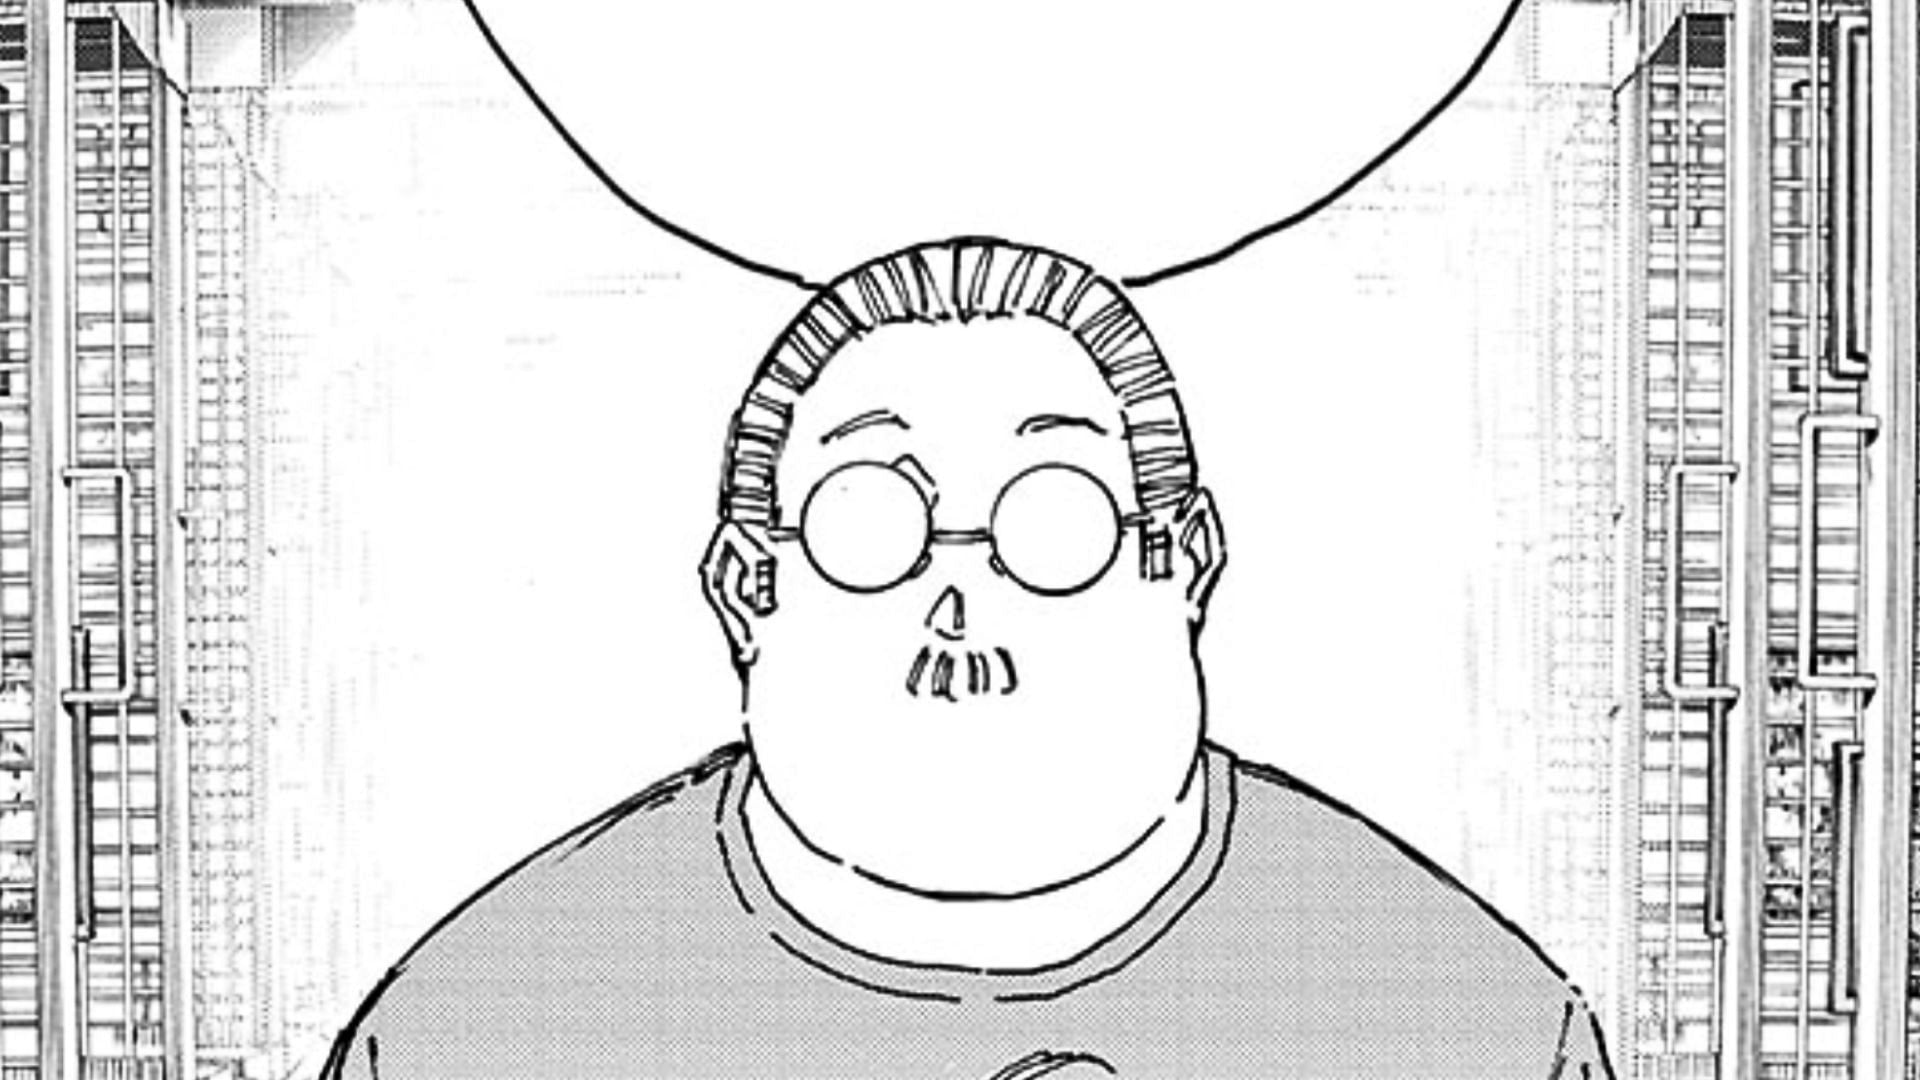 Sakamoto as seen in the manga (Image via Yuto Suzuki/Shueisha)